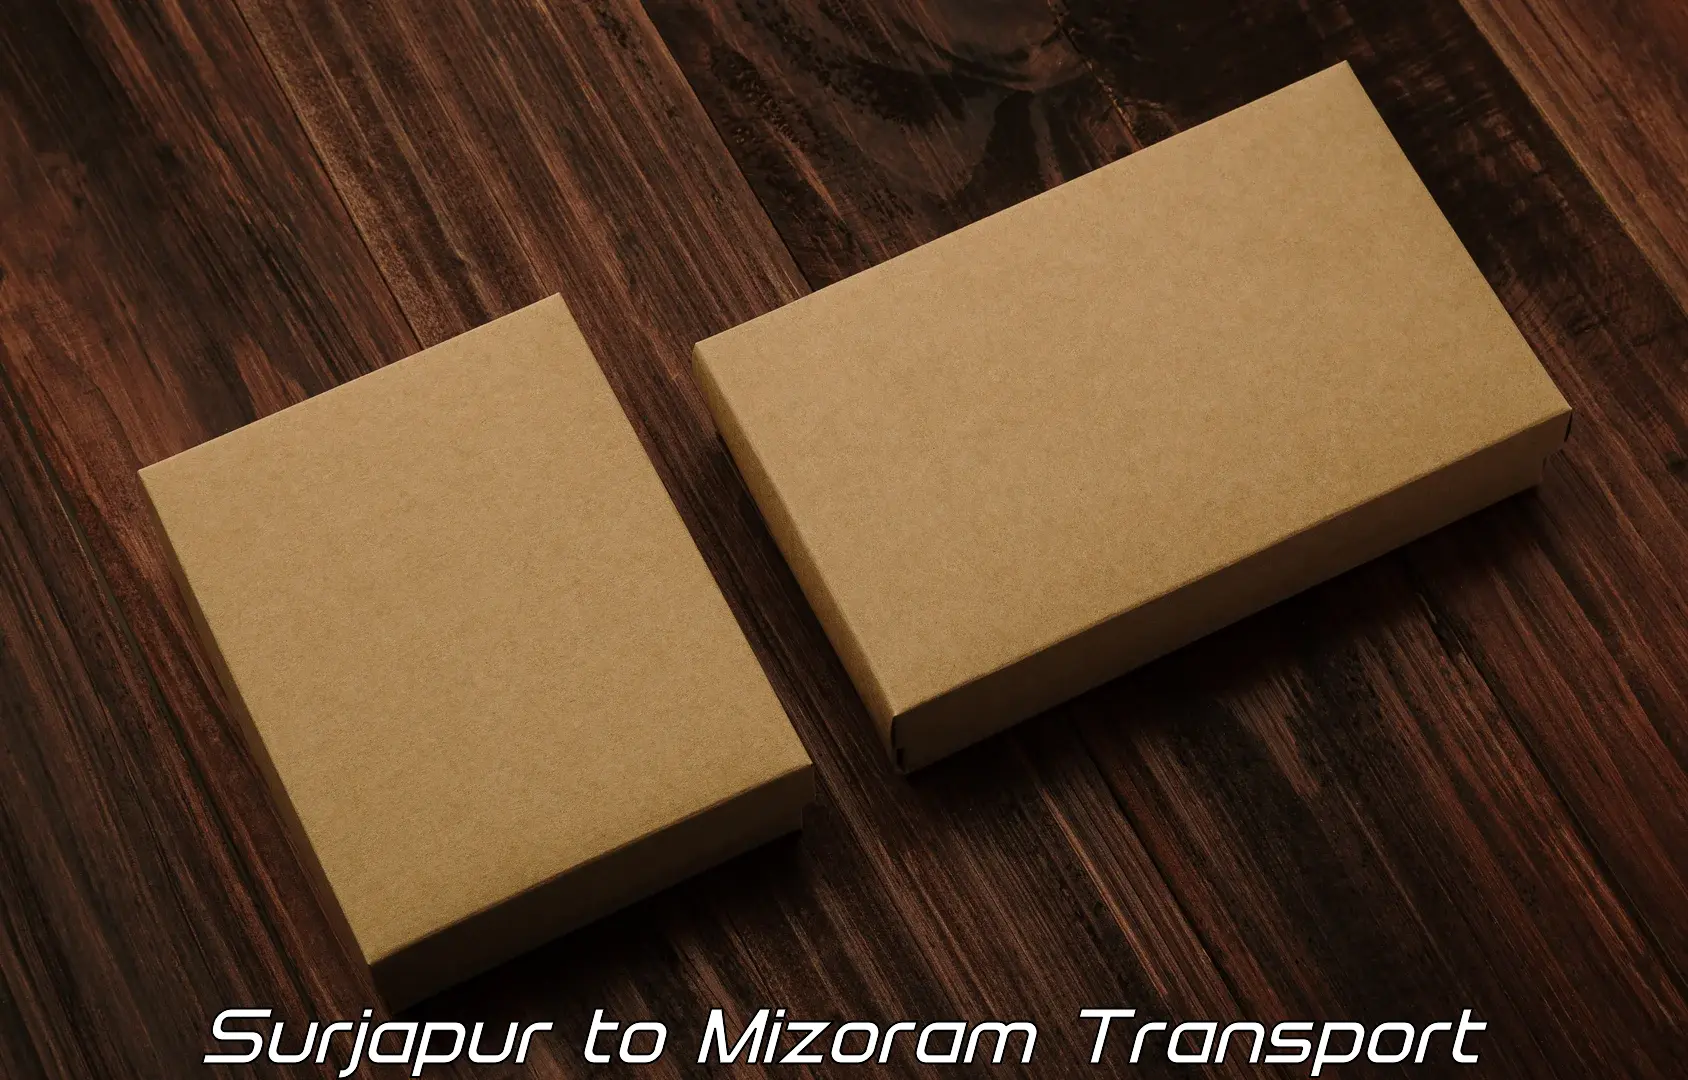 Parcel transport services Surjapur to Mizoram